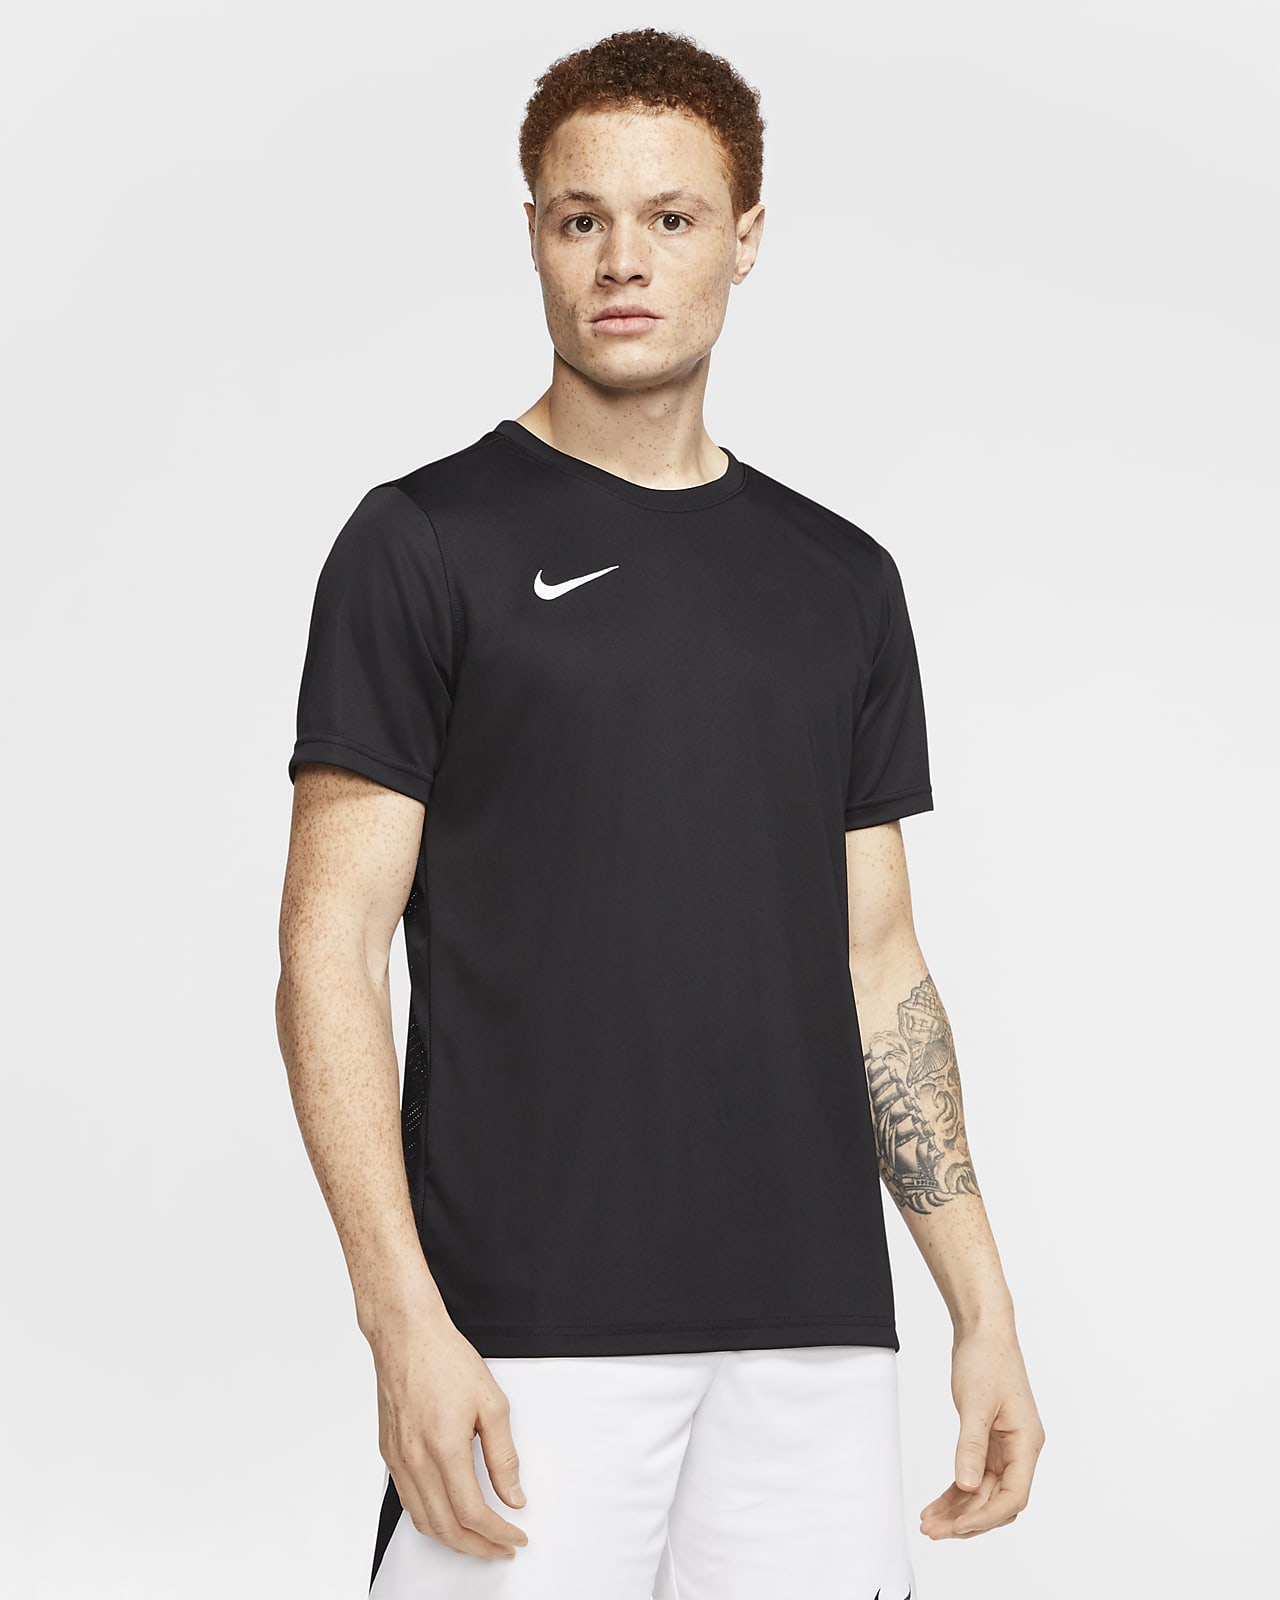 Nike公式 ナイキ Dri Fit パーク 7 Jby メンズ サッカーユニフォーム オンラインストア 通販サイト